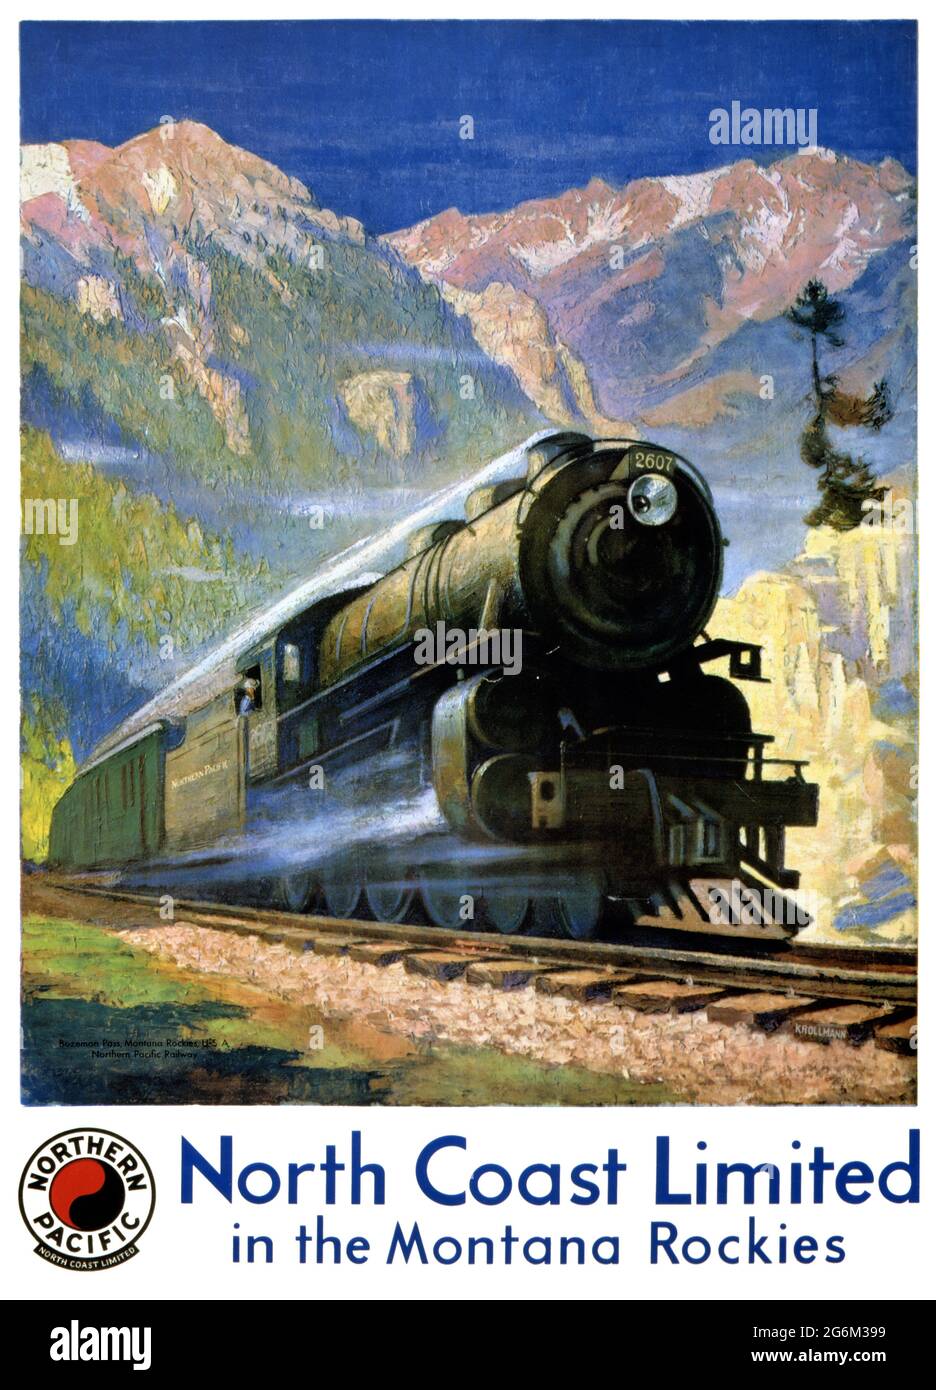 North Coast Limited in den Montana Rockies von Gustav Wilhelm Krollmann (1888-1962). Restauriertes Vintage-Poster, das 1929 in den USA veröffentlicht wurde. Stockfoto